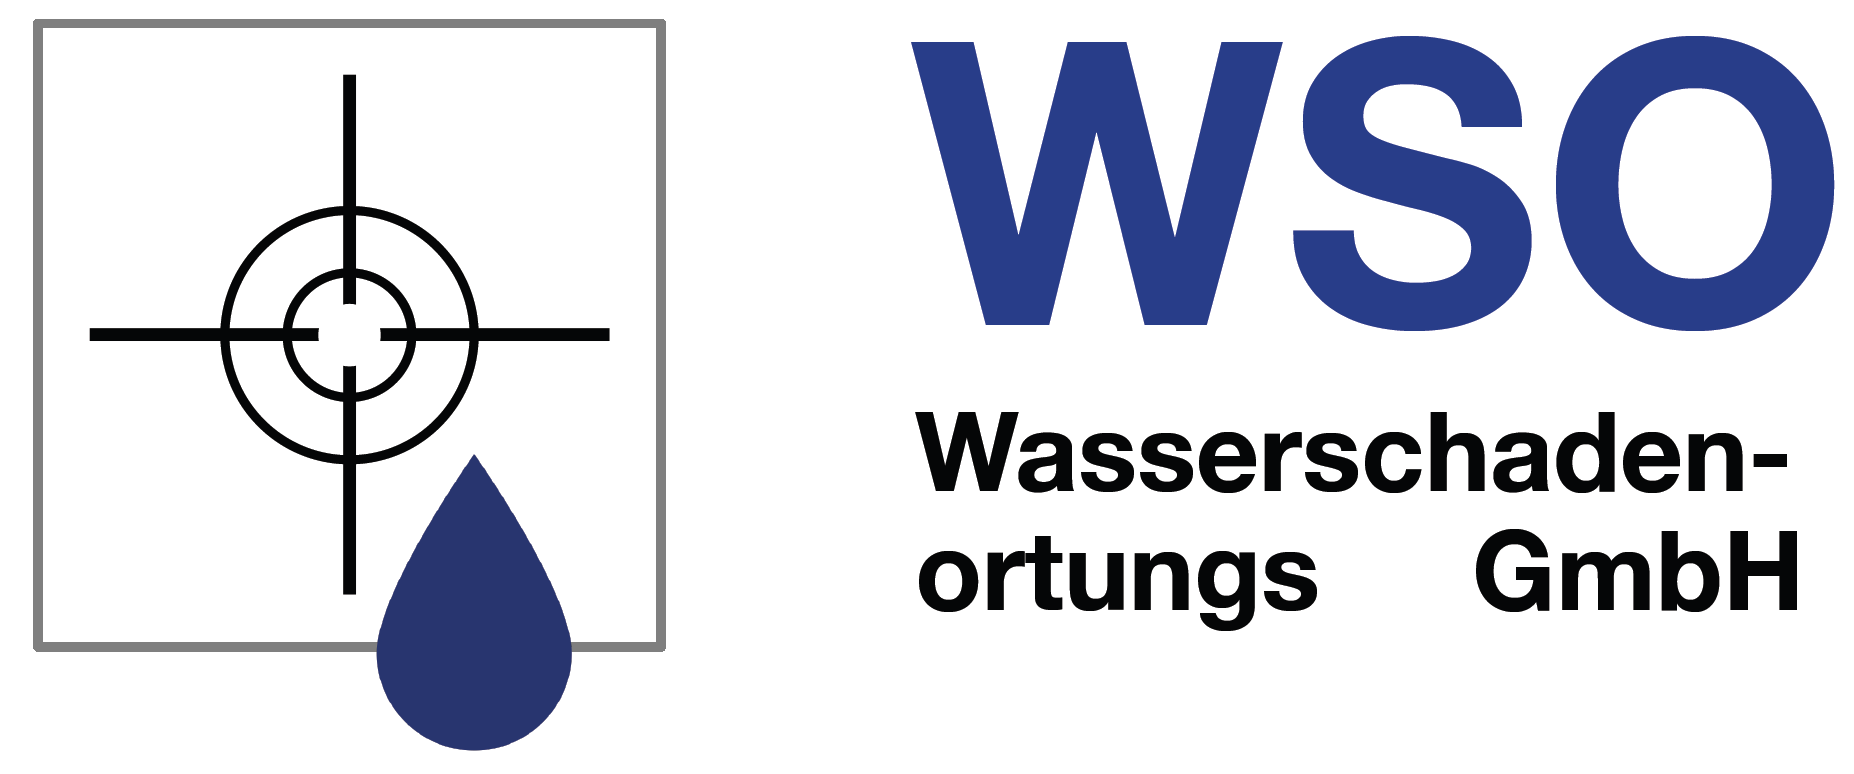 WSO Wasserschadenortungs GmbH